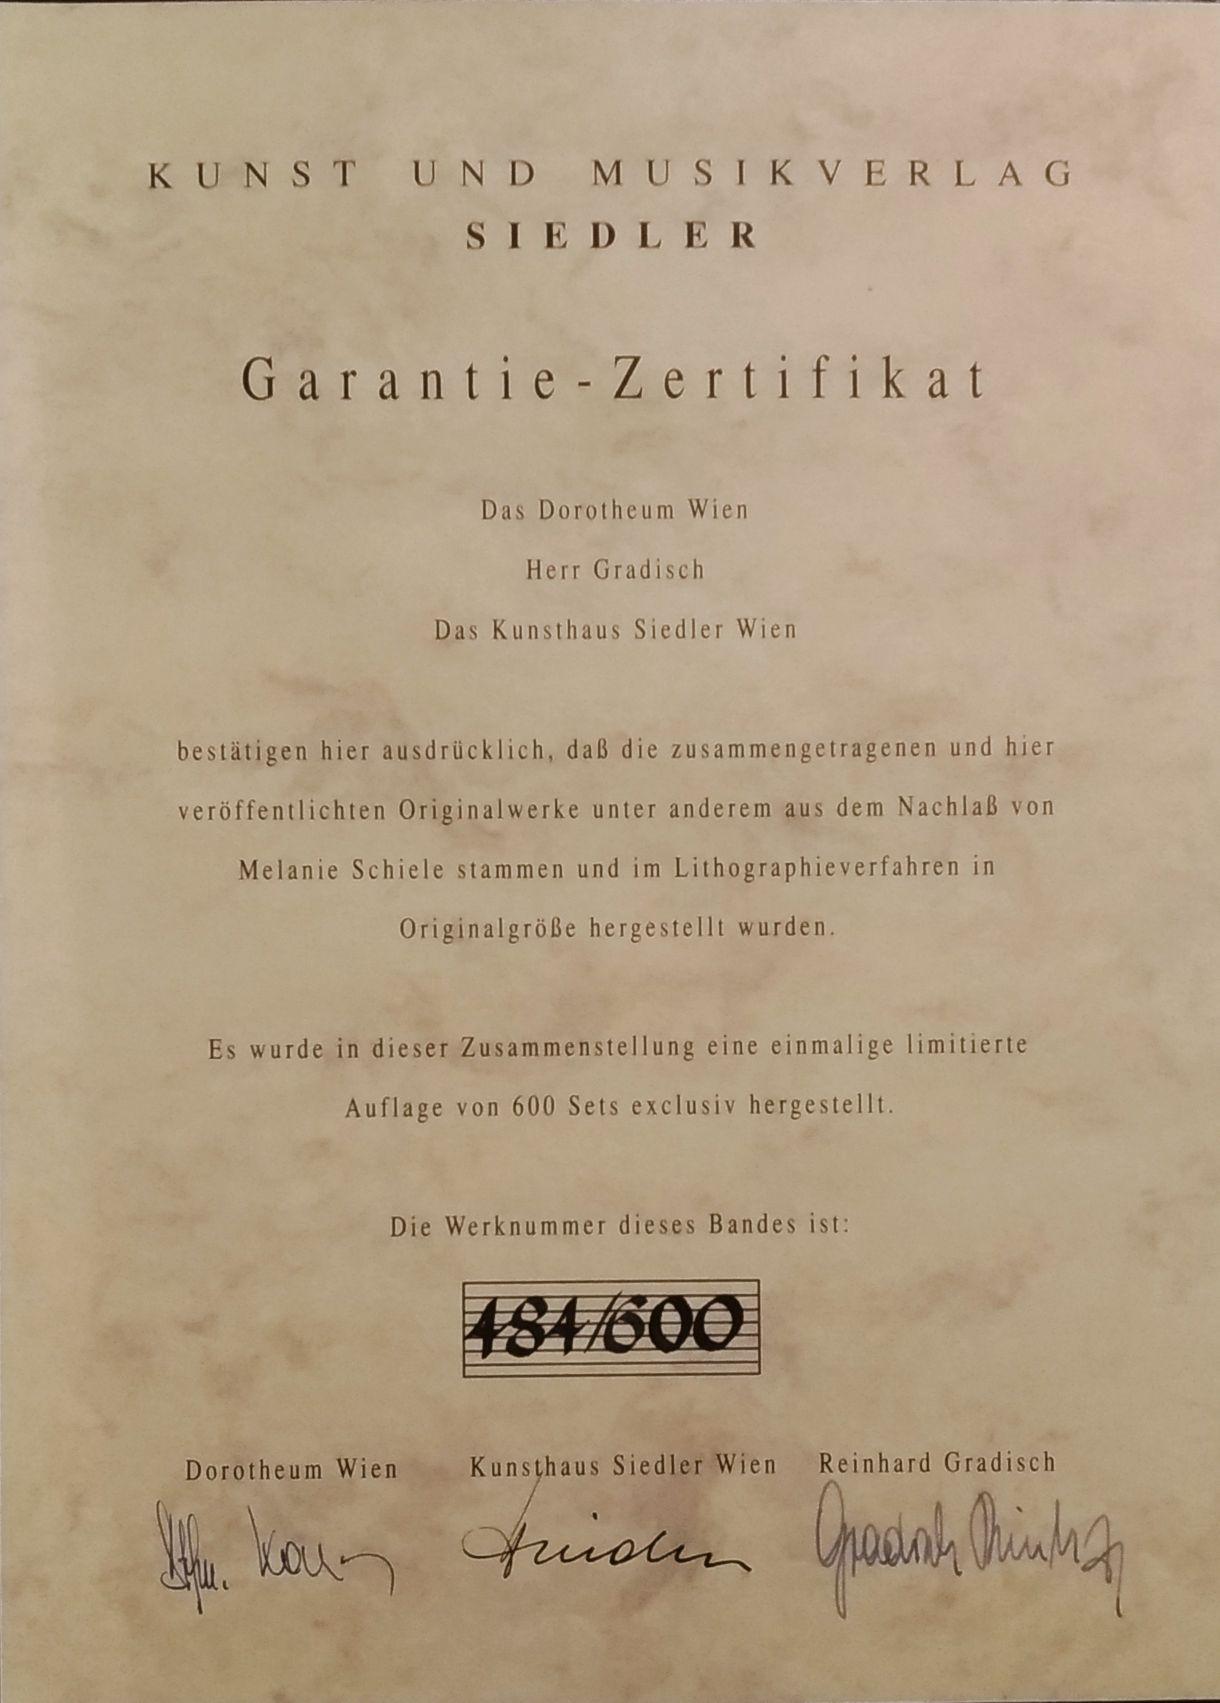 Kirche von Bozen - Print by (after) Egon Schiele